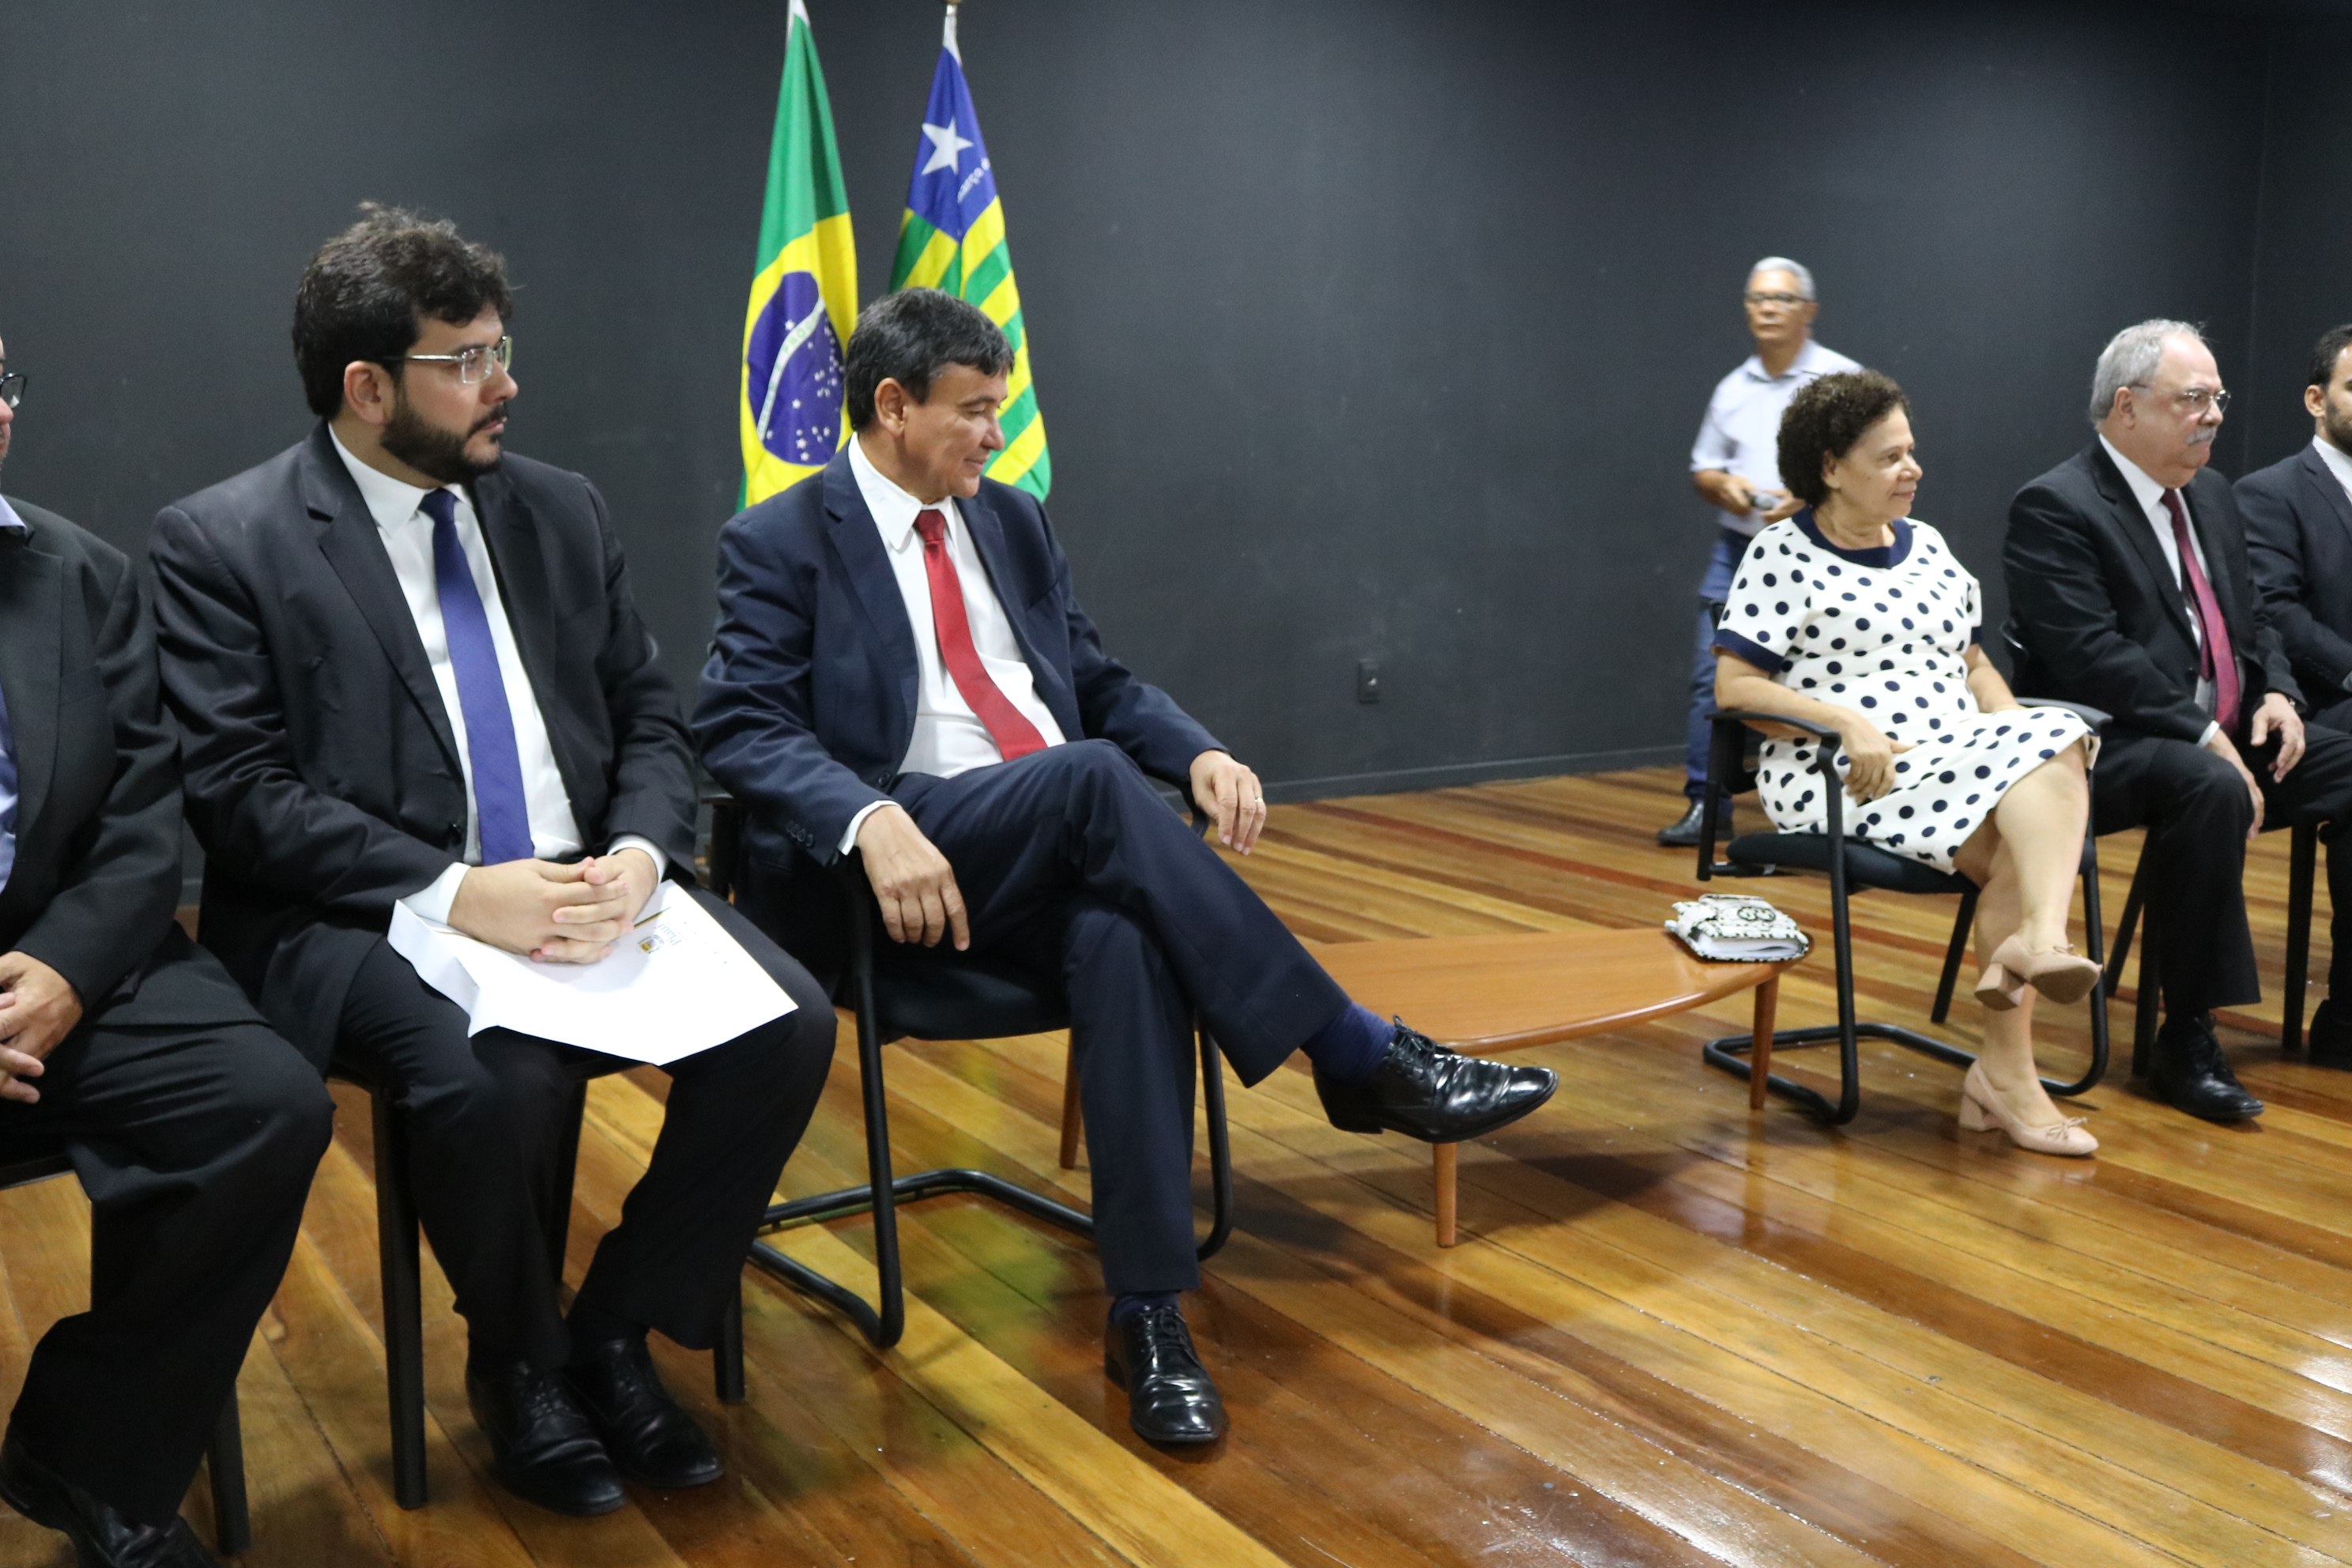 Governador do Piauí, Wellington Dias